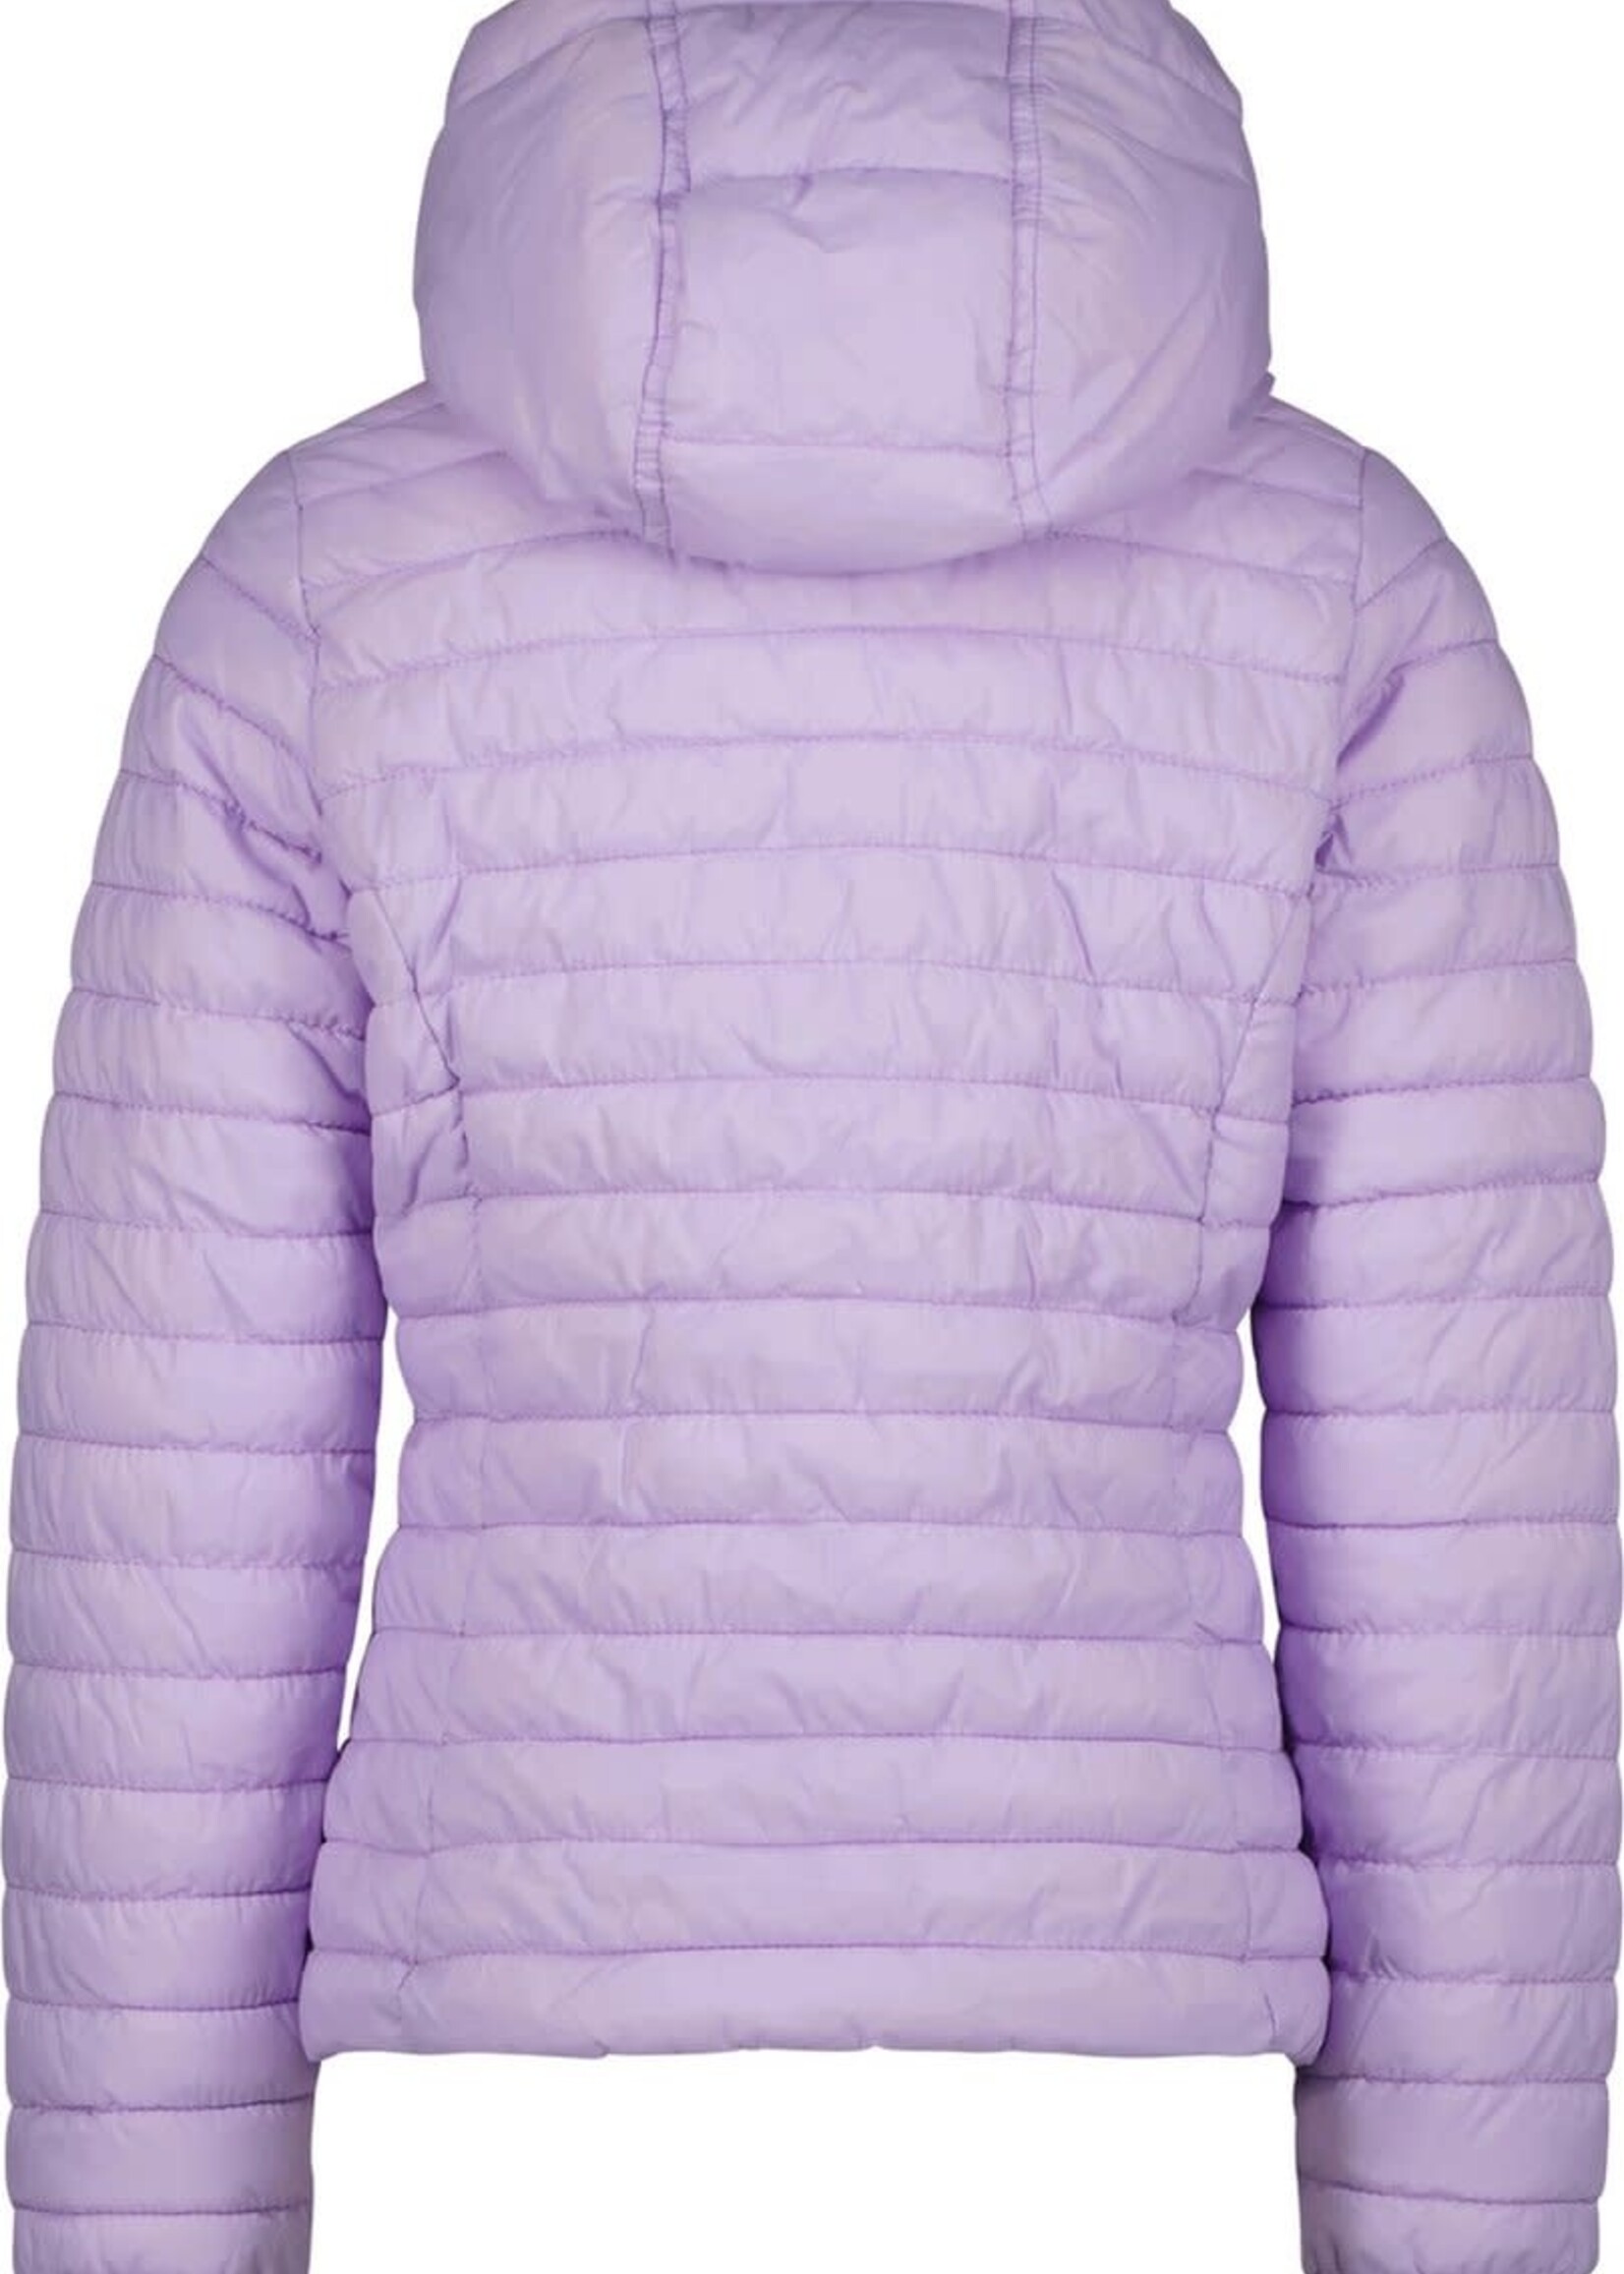 Cheyenne jacket - Lavender